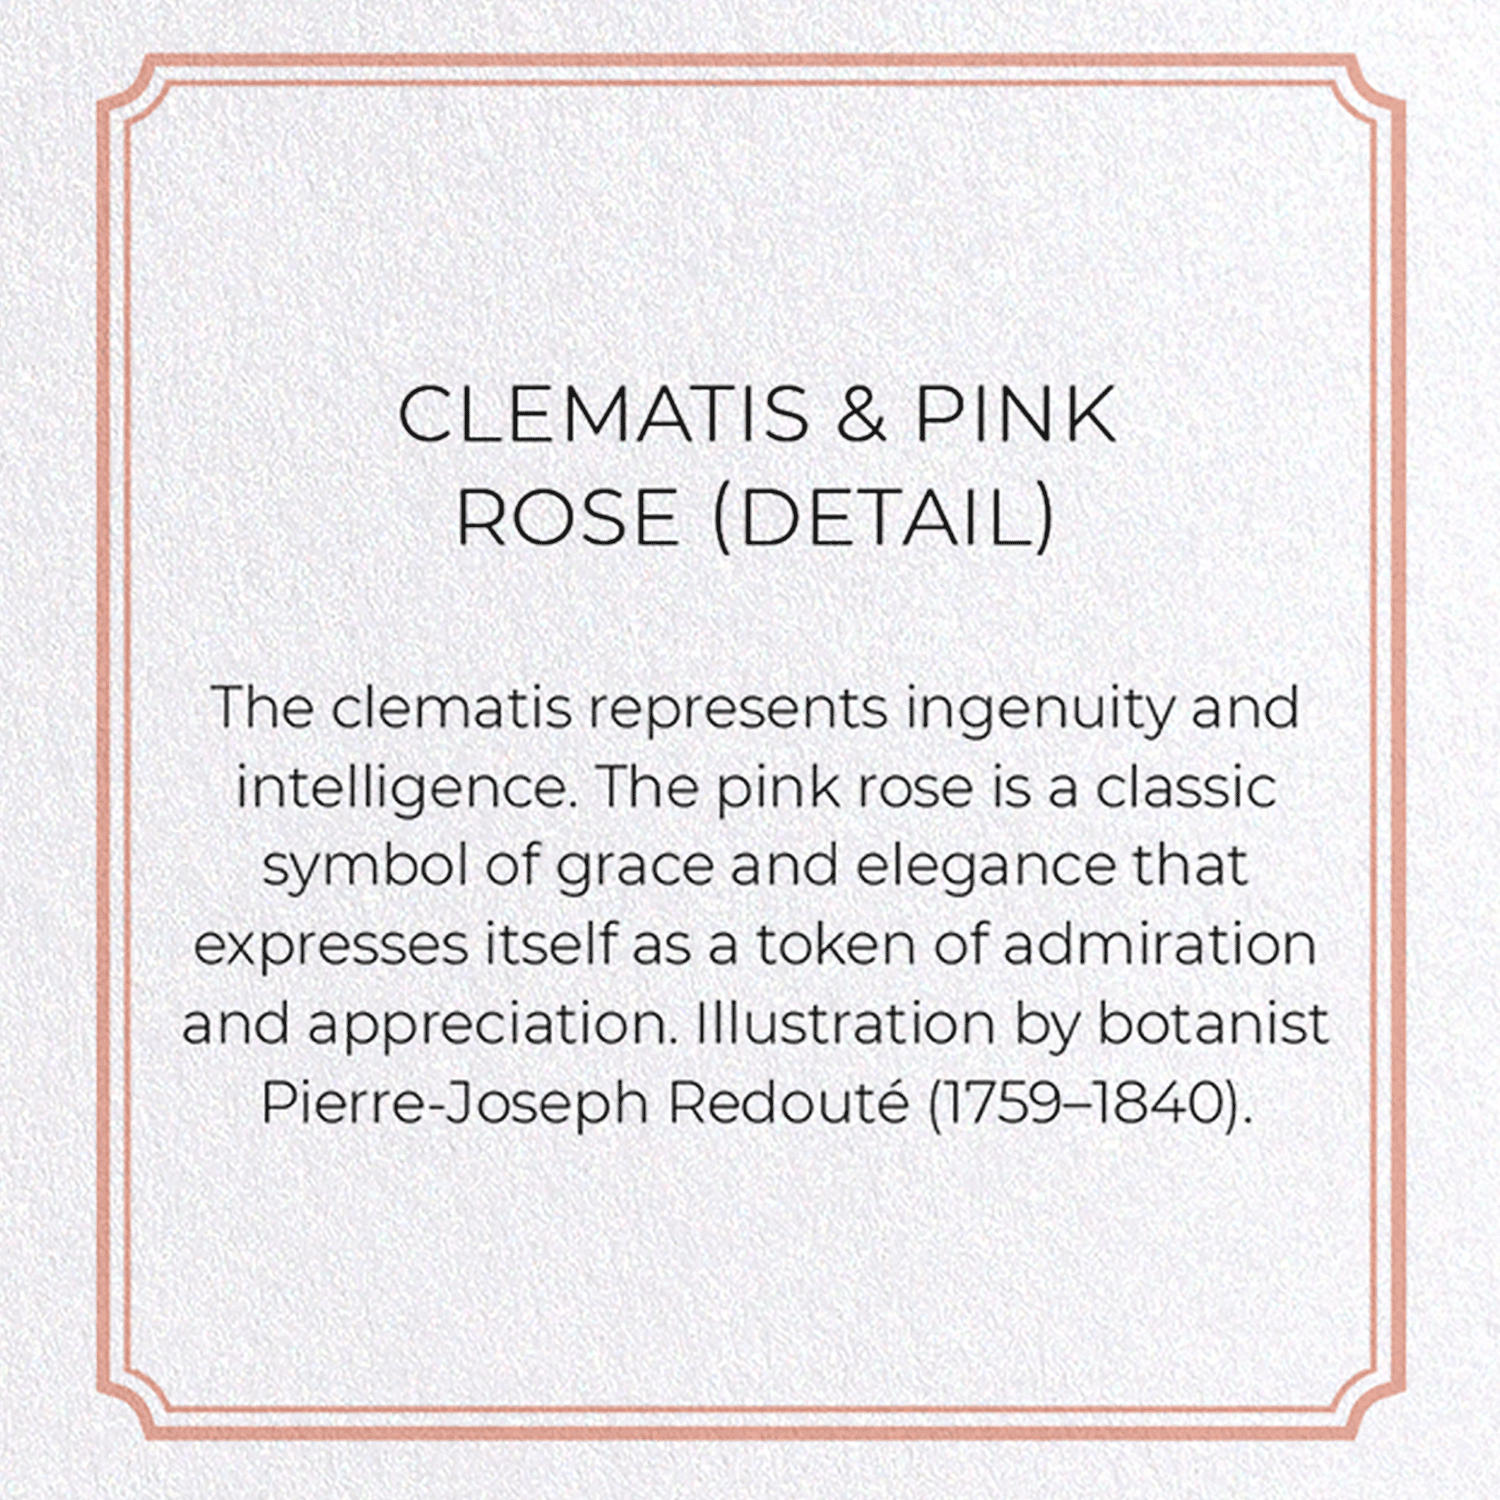 CLEMATIS & PINK ROSE: Botanical Greeting Card